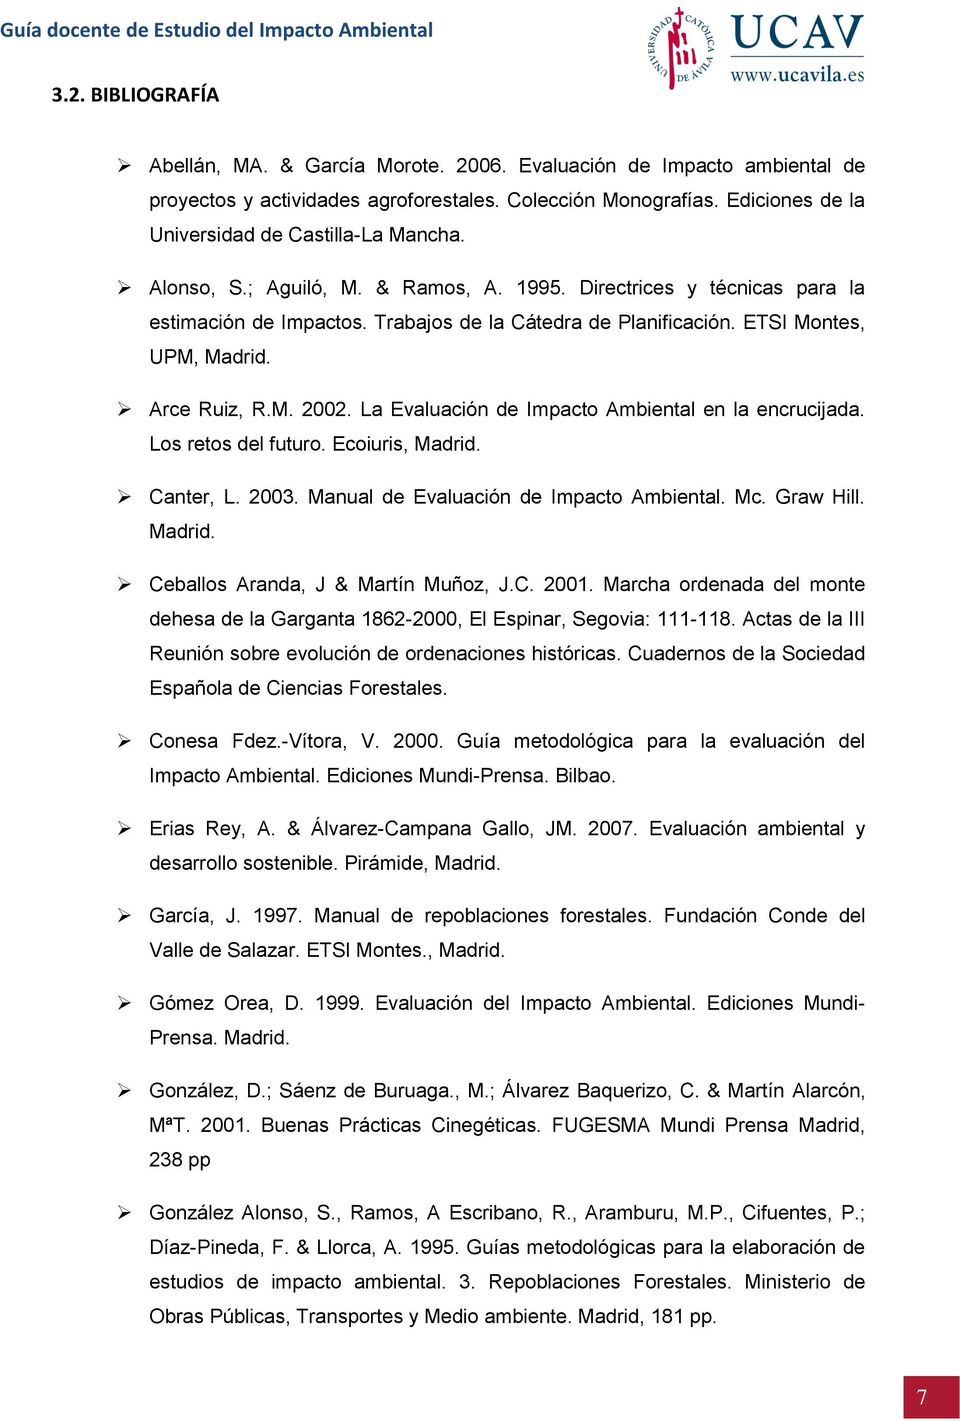 ETSI Montes, UPM, Madrid. Arce Ruiz, R.M. 2002. La Evaluación de Impacto Ambiental en la encrucijada. Los retos del futuro. Ecoiuris, Madrid. Canter, L. 2003.